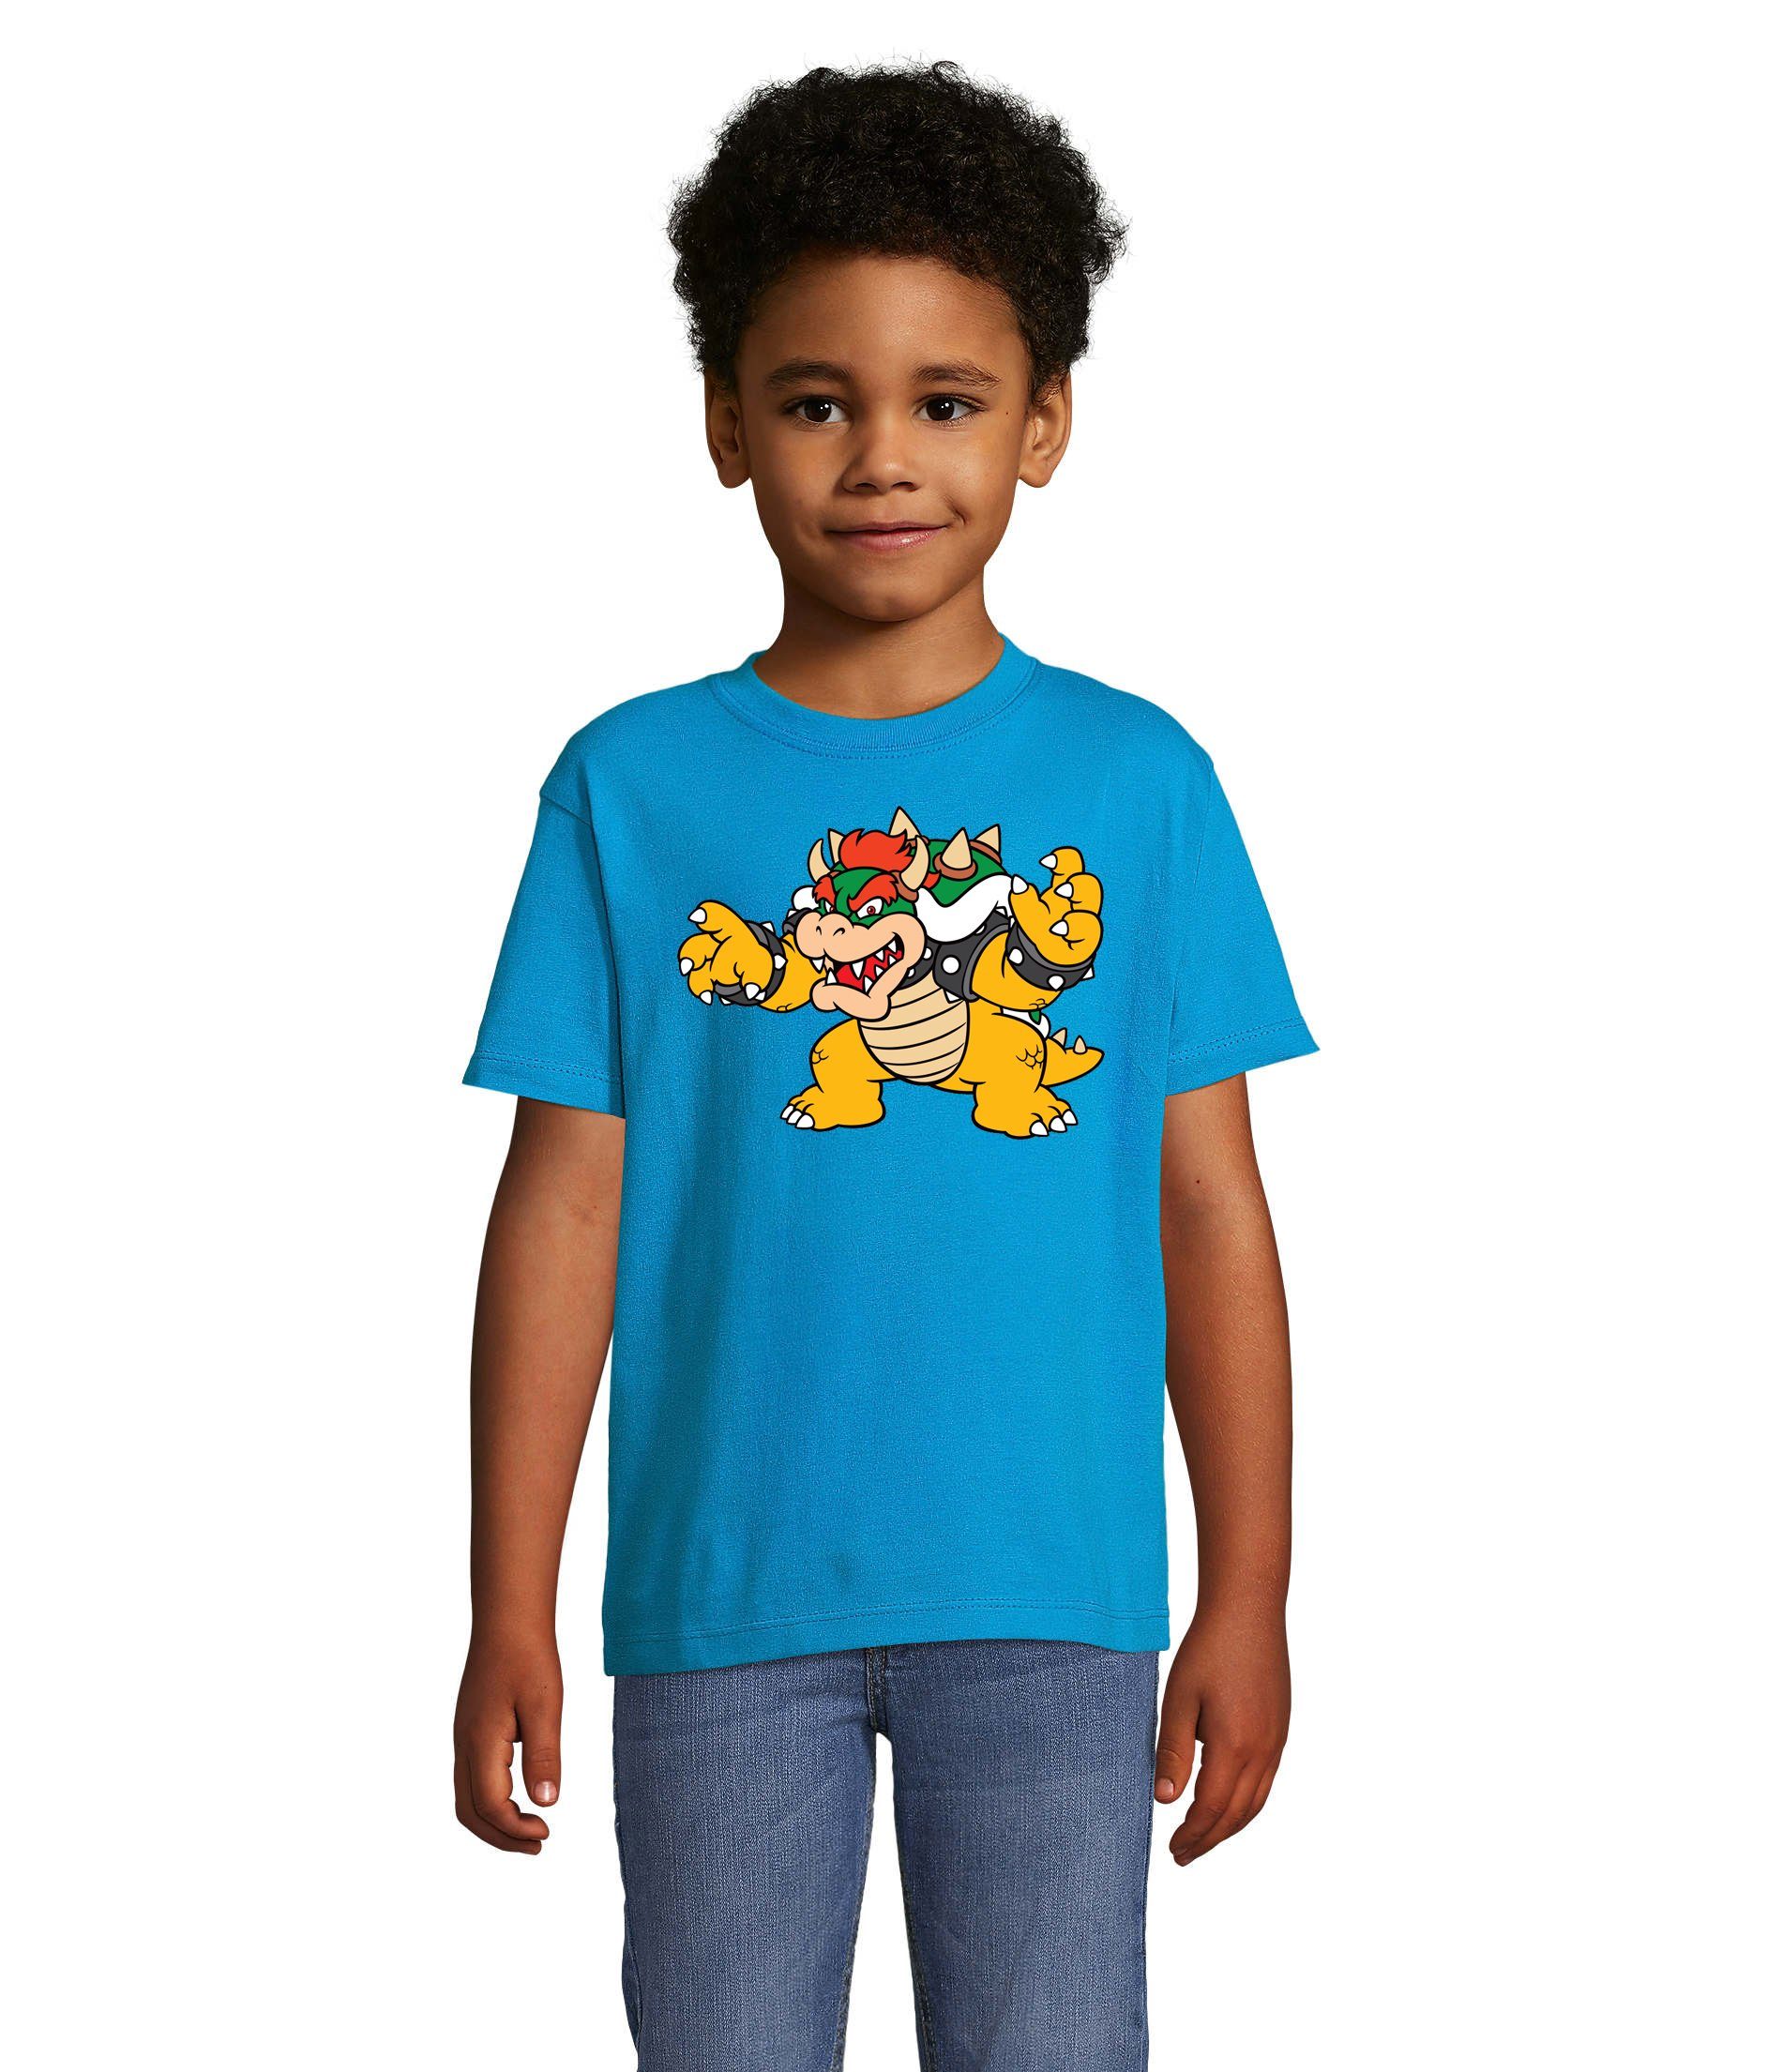 Blondie & Brownie T-Shirt Kinder Bowser Nintendo Mario Yoshi Luigi Game Gamer Konsole Blau